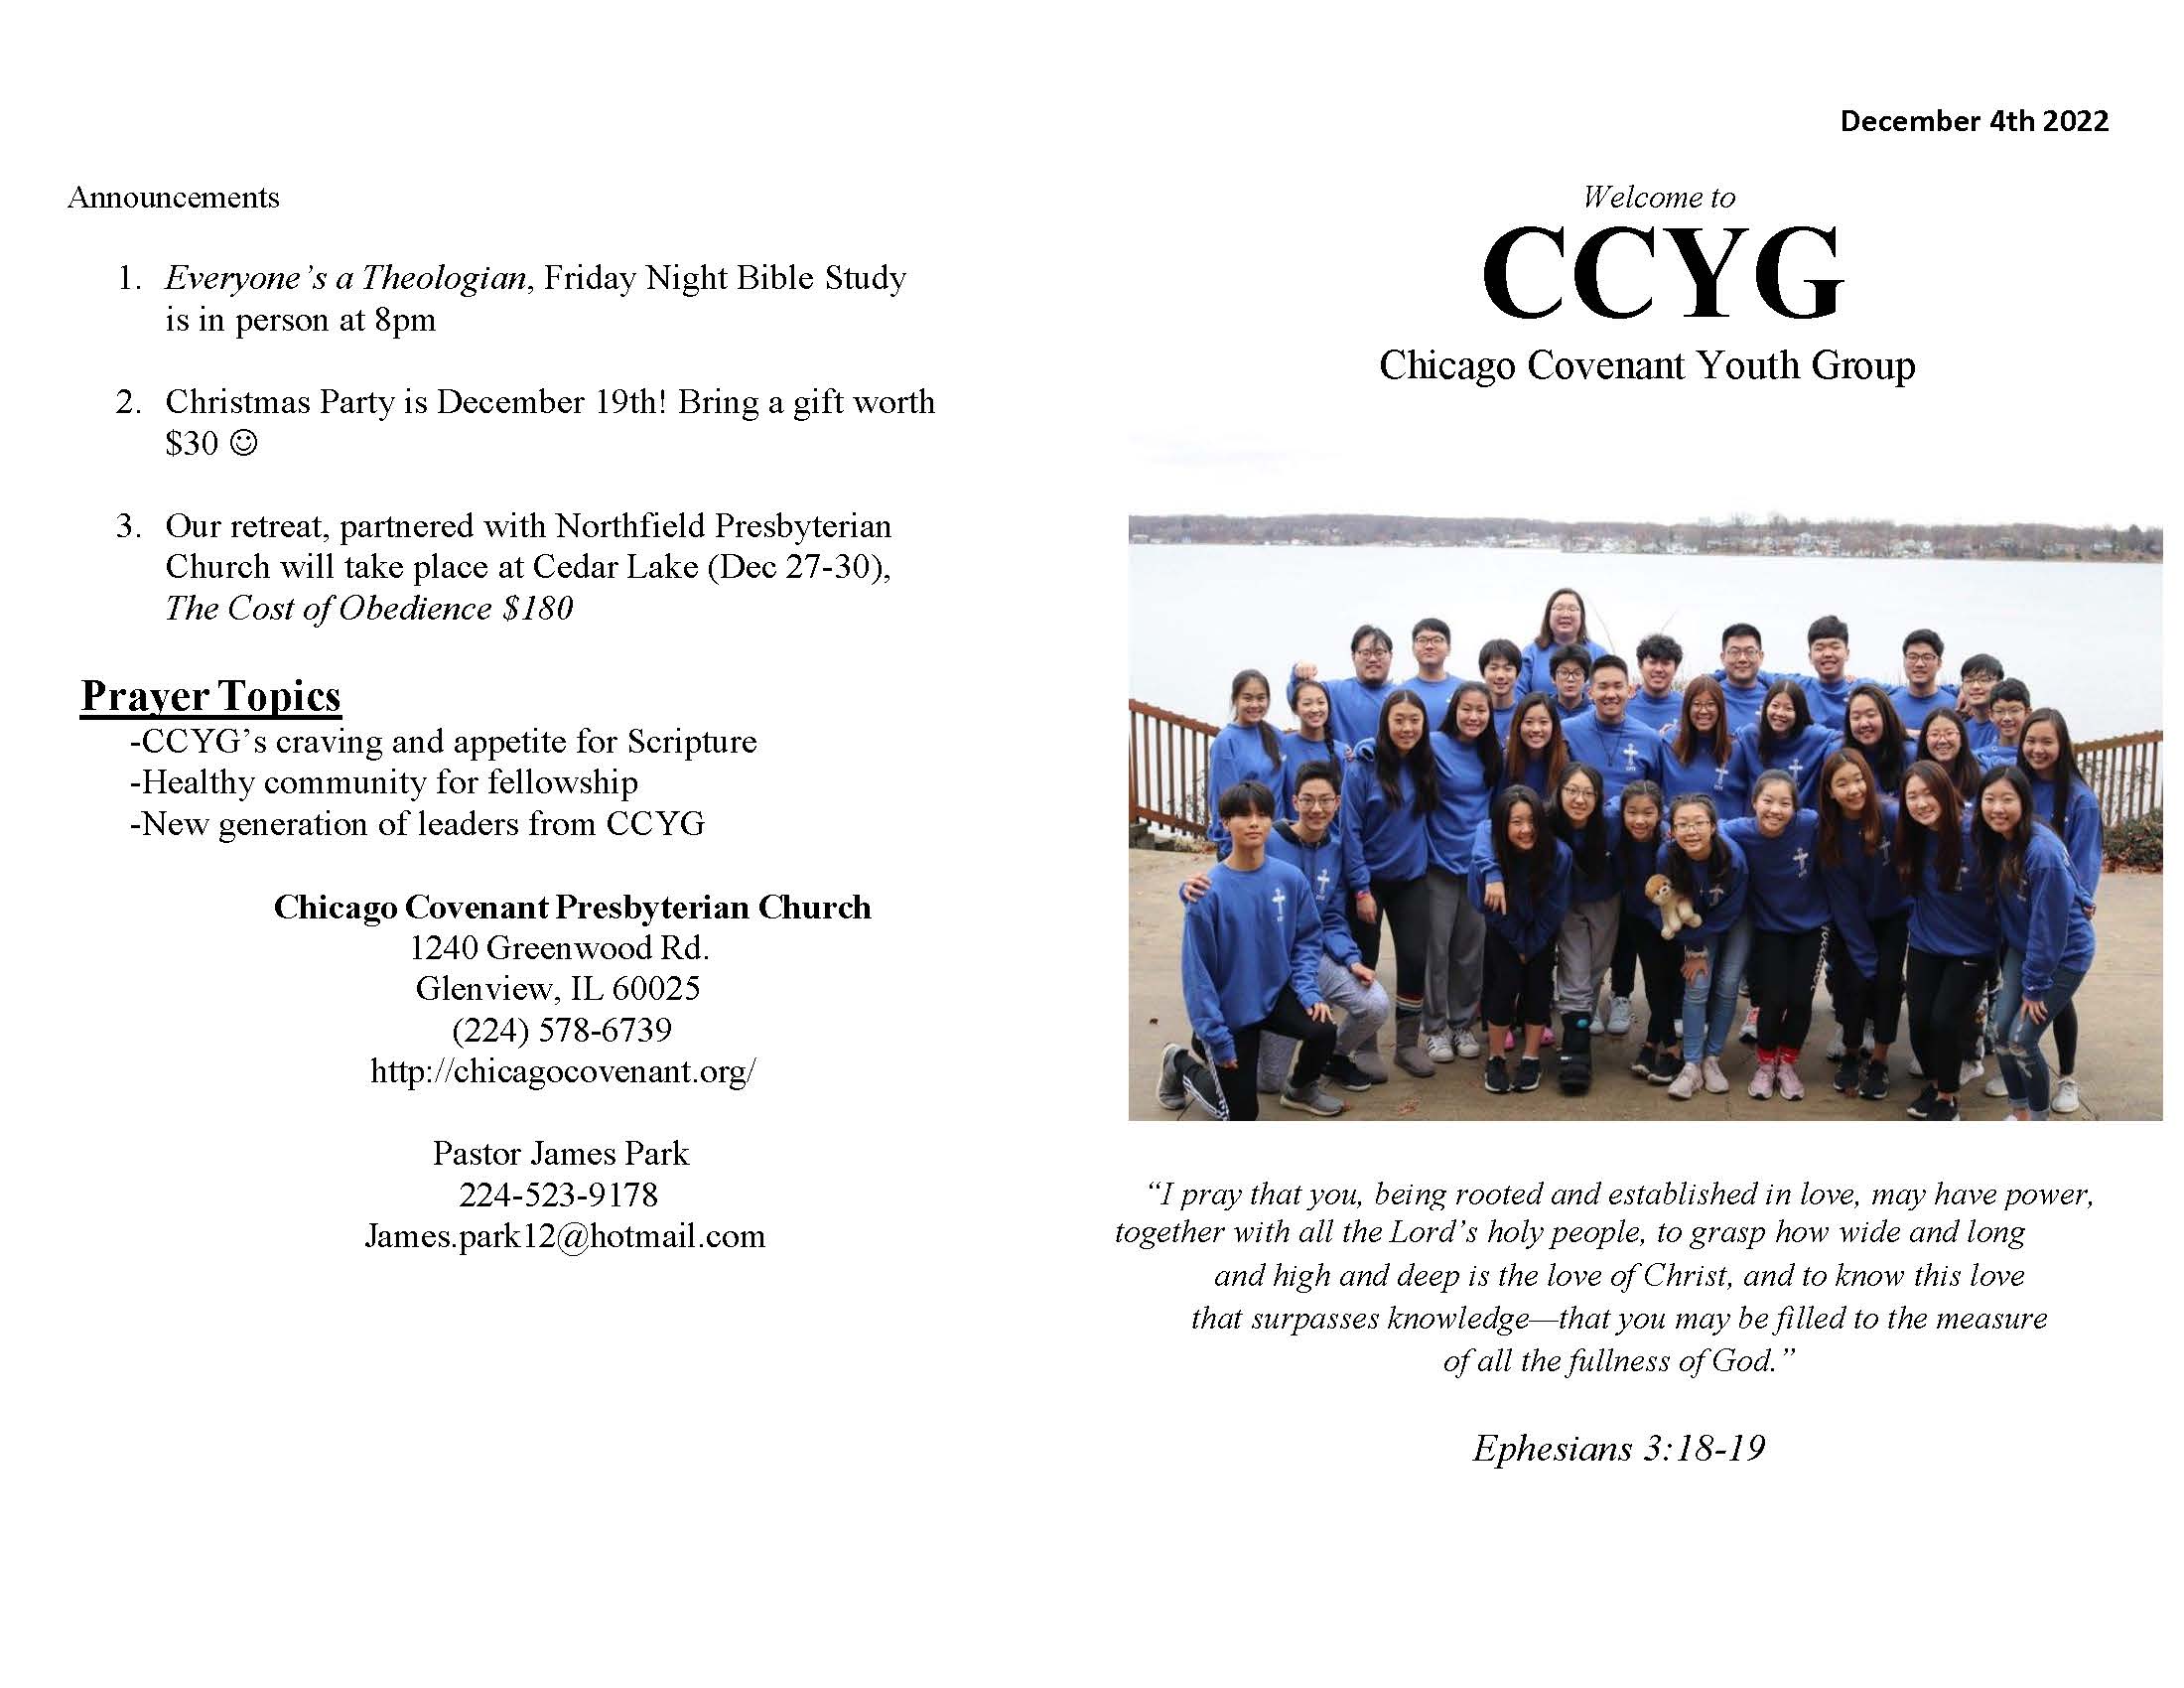 CCYG Bulletin 120422_Page_1.jpg